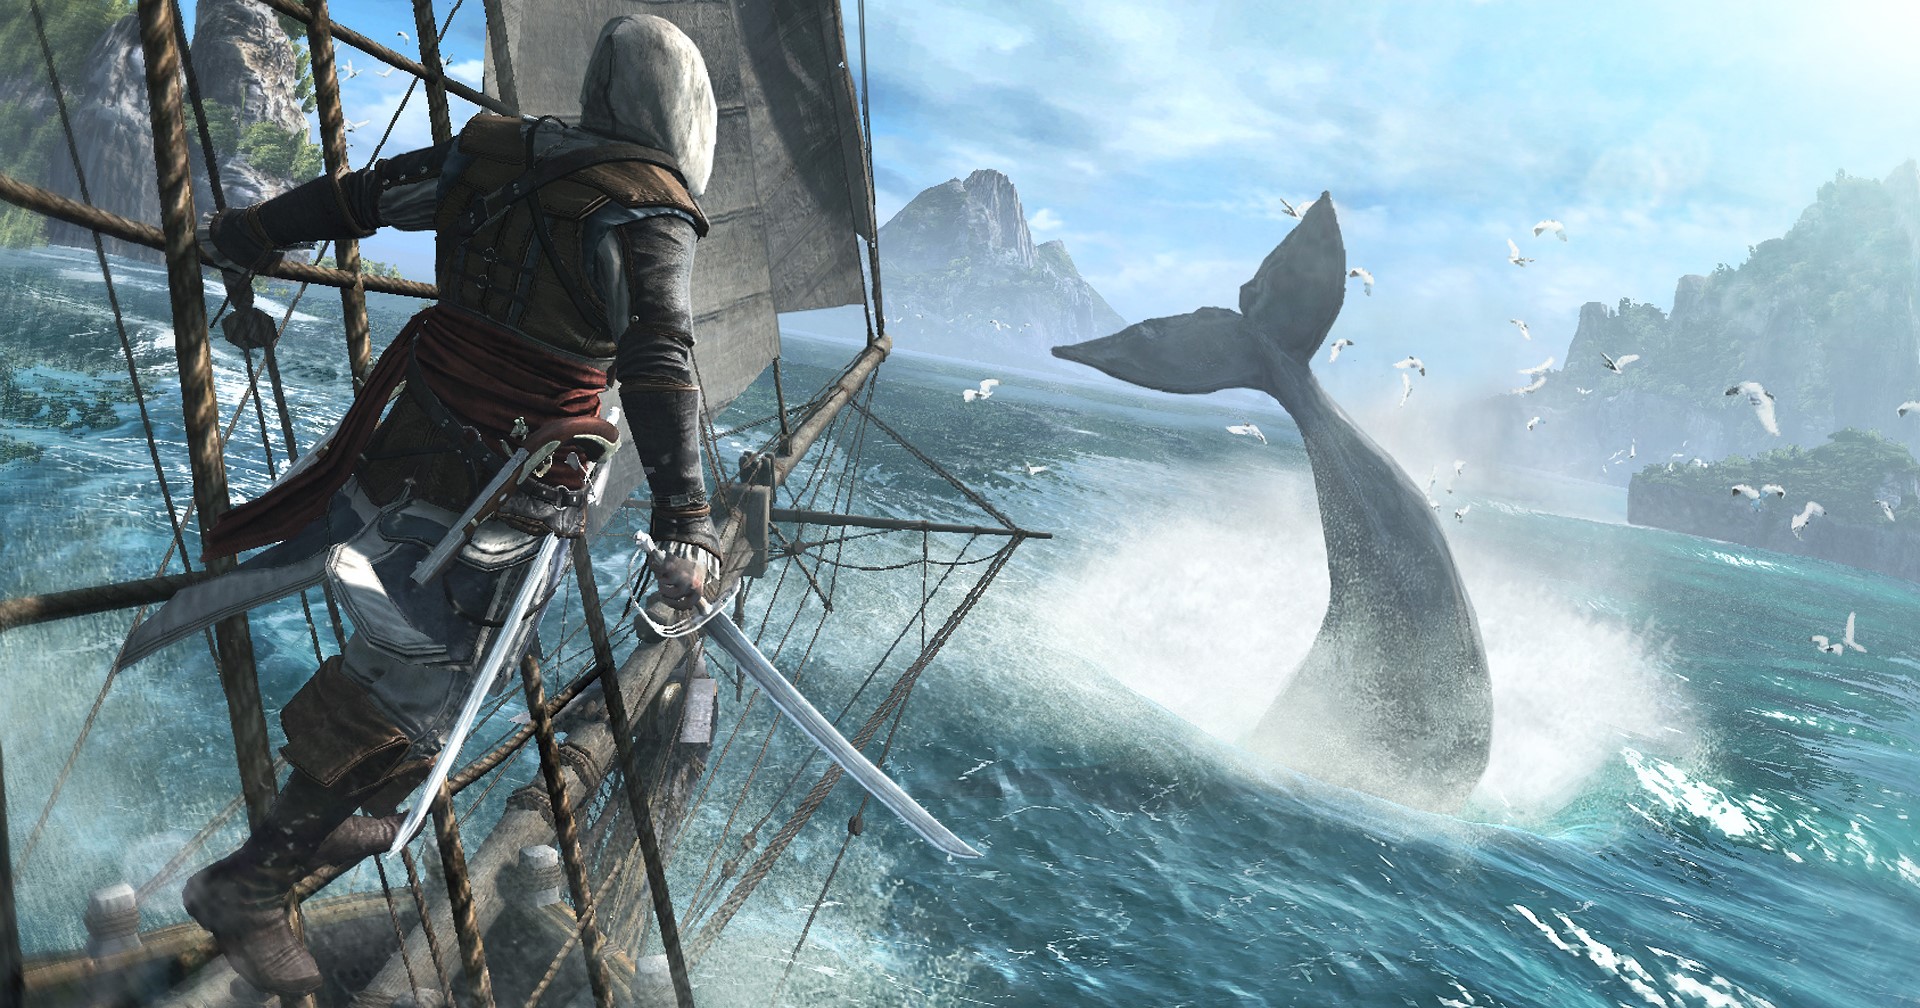 ผู้เขียนบท Assassin’s Creed กลับมาทำงานให้ Ubisoft หลังลาออกไป 9 เดือน